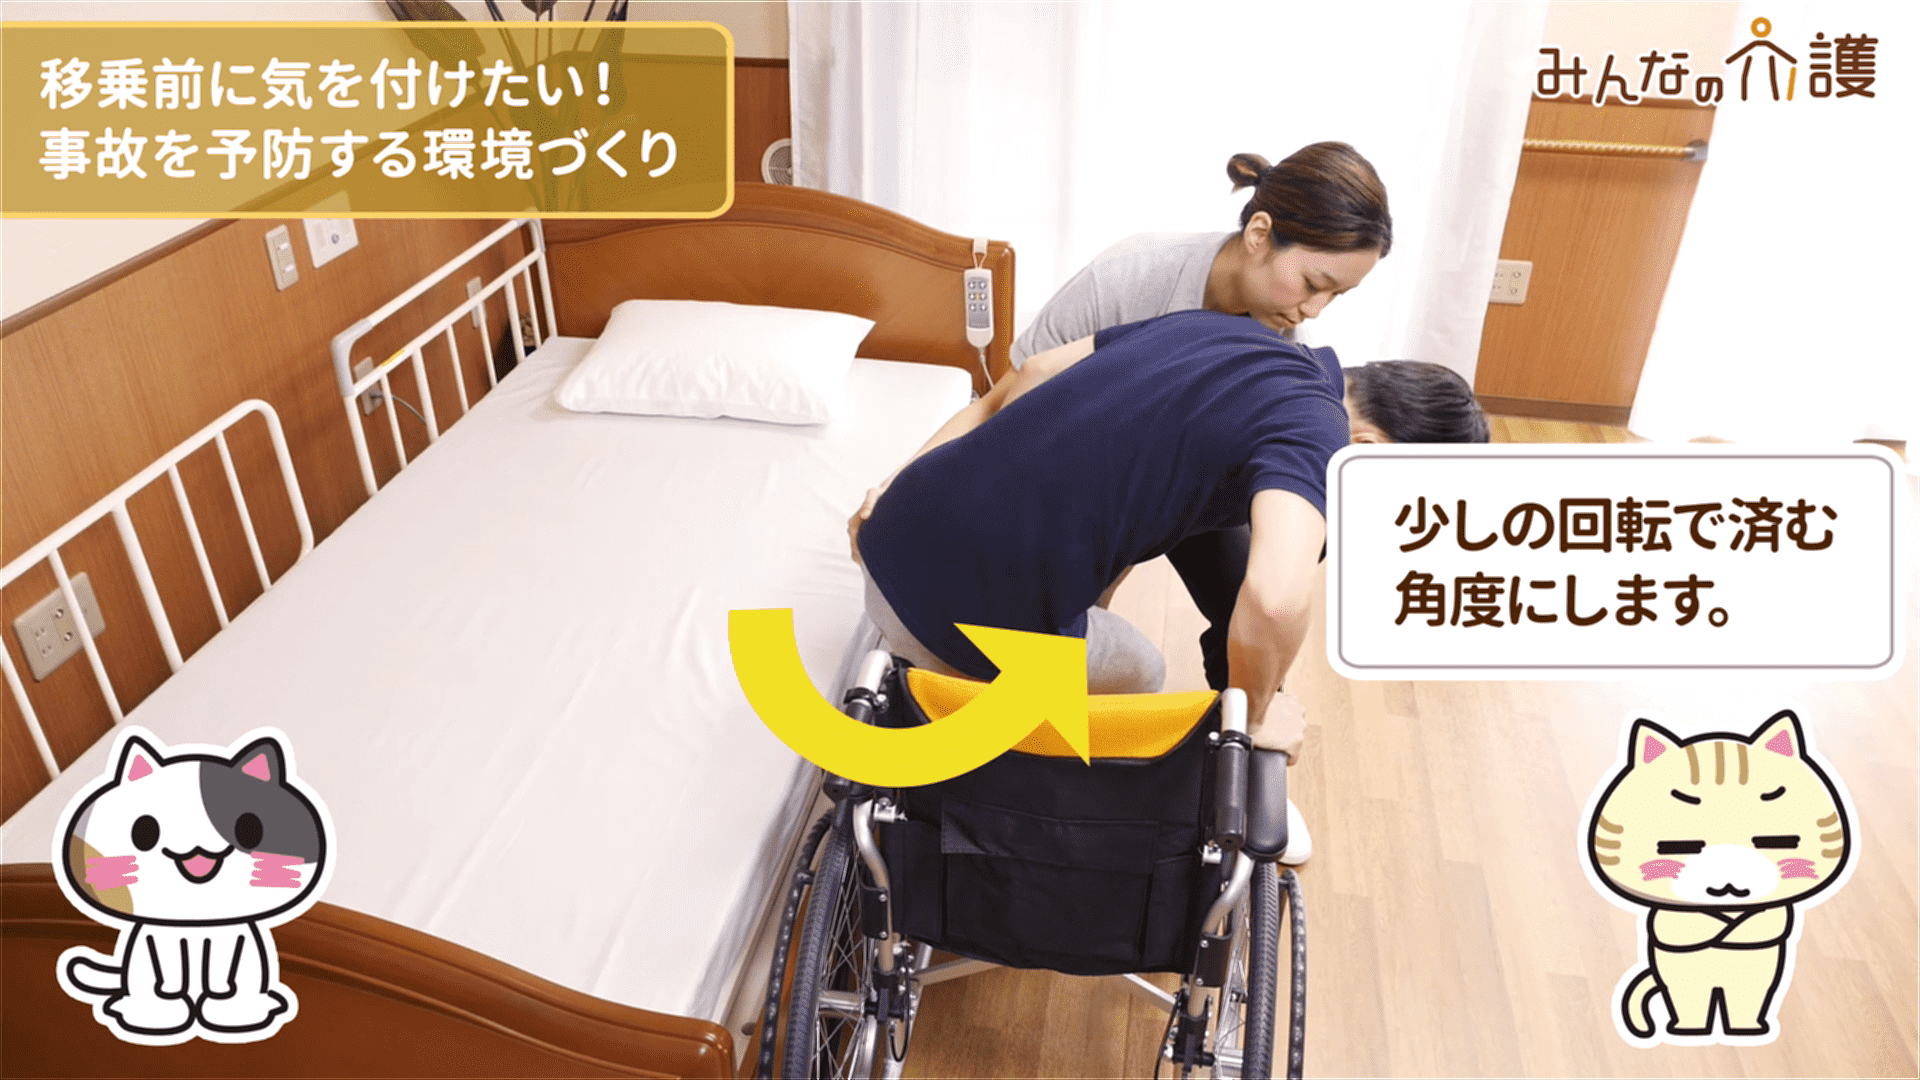 車椅子の角度が適切な状態のイメージ